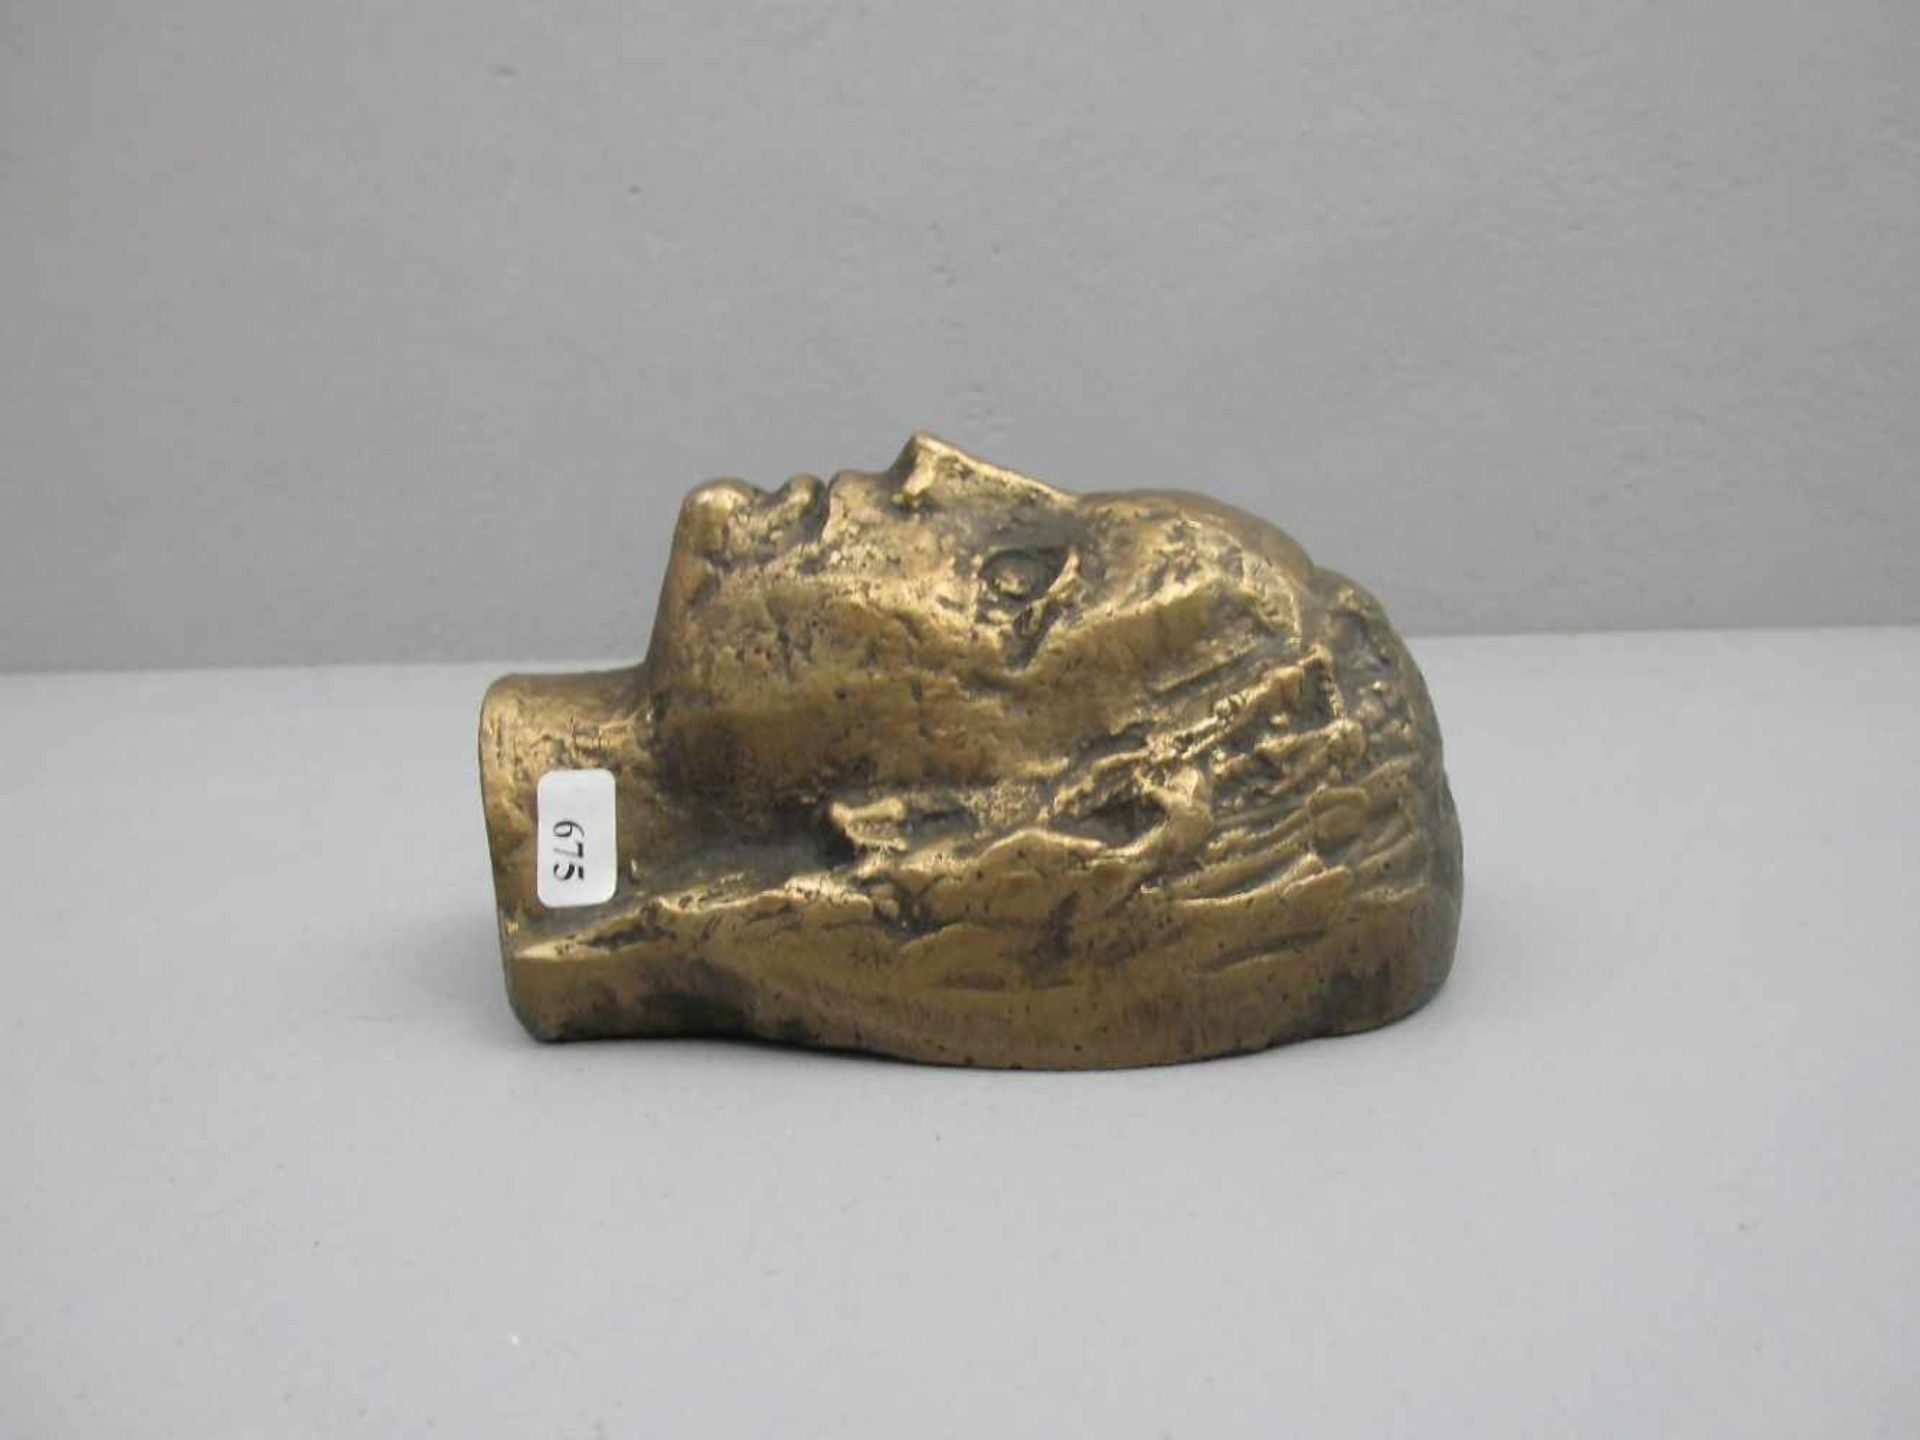 KRAUTWALD, JOSEPH (Borkenstadt / Oberschlesien 1914-2003 Rheine), Skulptur: "Kopf", Bronze mit - Image 2 of 2